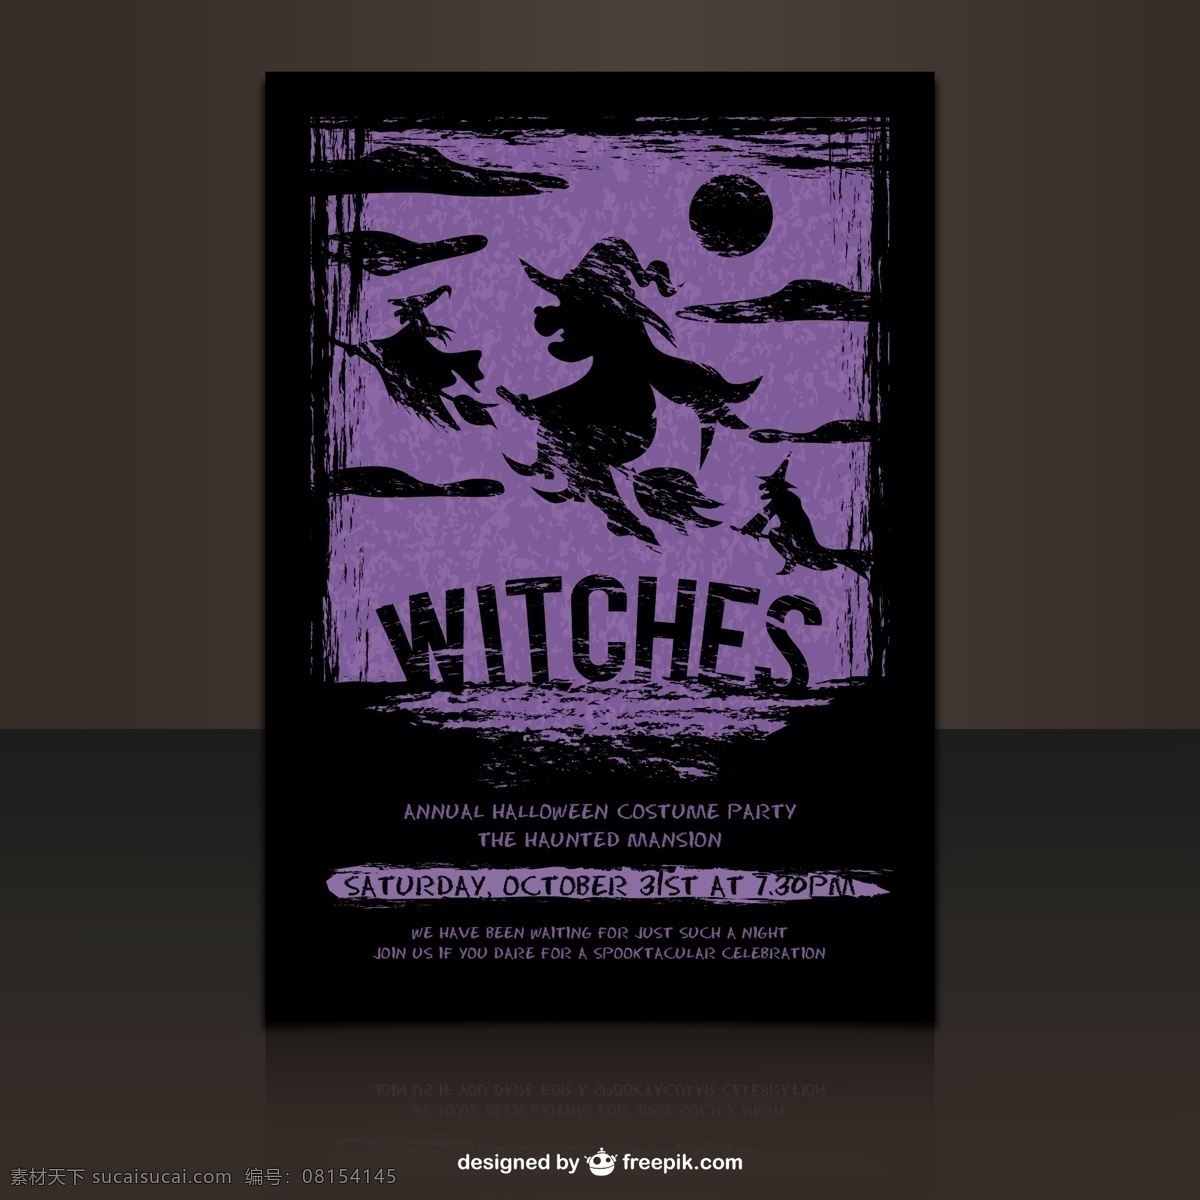 万圣节 派对 宣传单 女巫 矢量图 海报 节日素材 其他节日